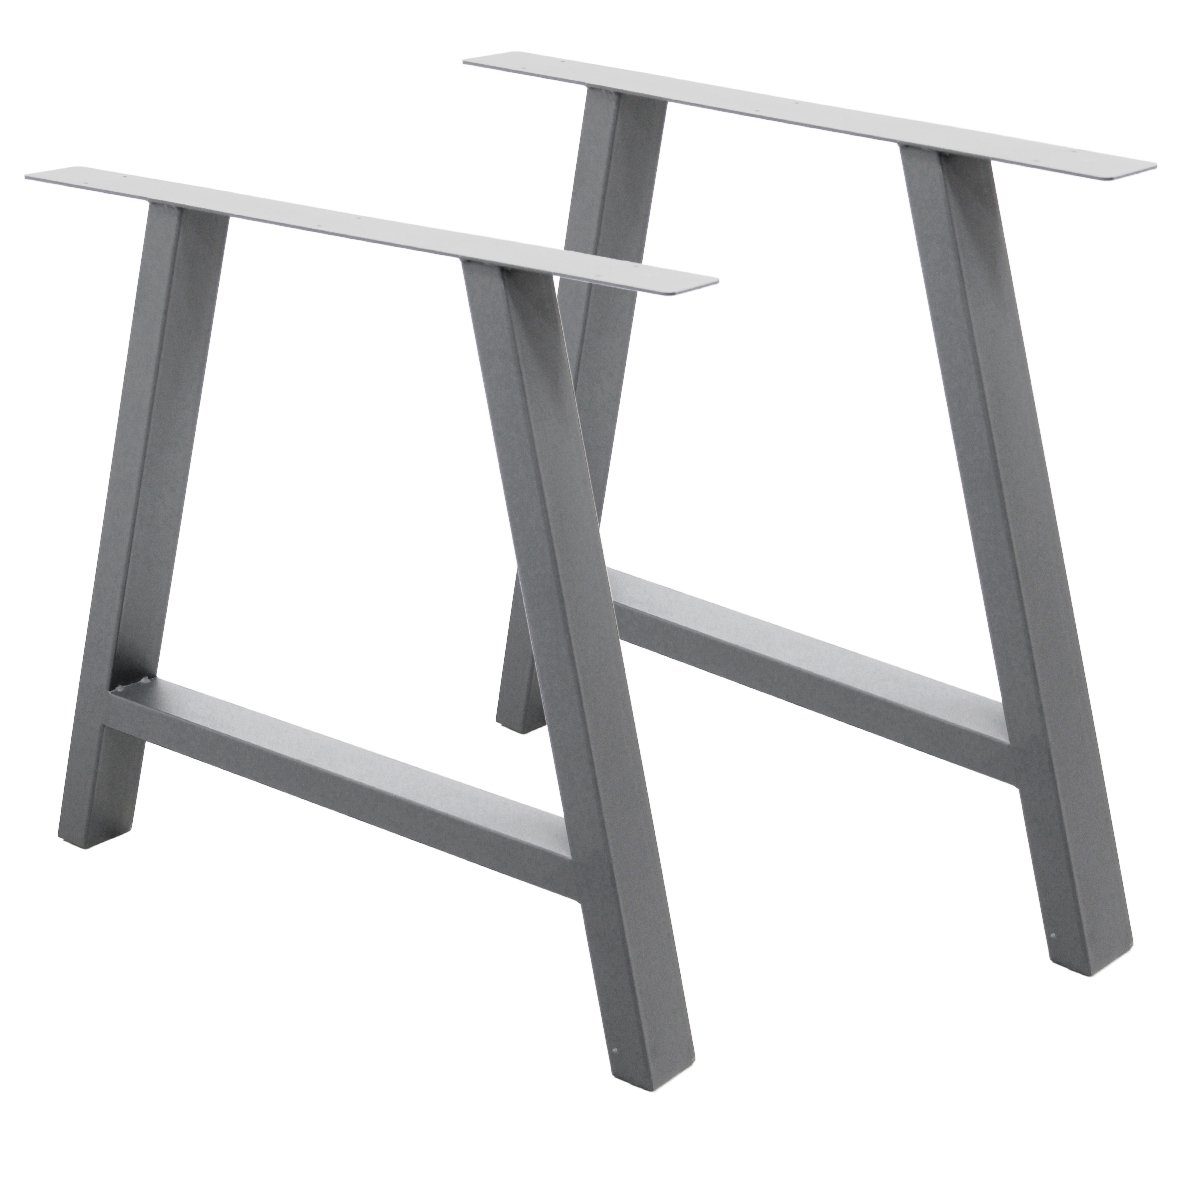 ECD Germany Tischbein A-Form Tischkufen Tischuntergestell Tischgestell Möbelfüße, 2er Set A-Design 70x72cm Grau pulverbeschichtet Stahl Industriedesign